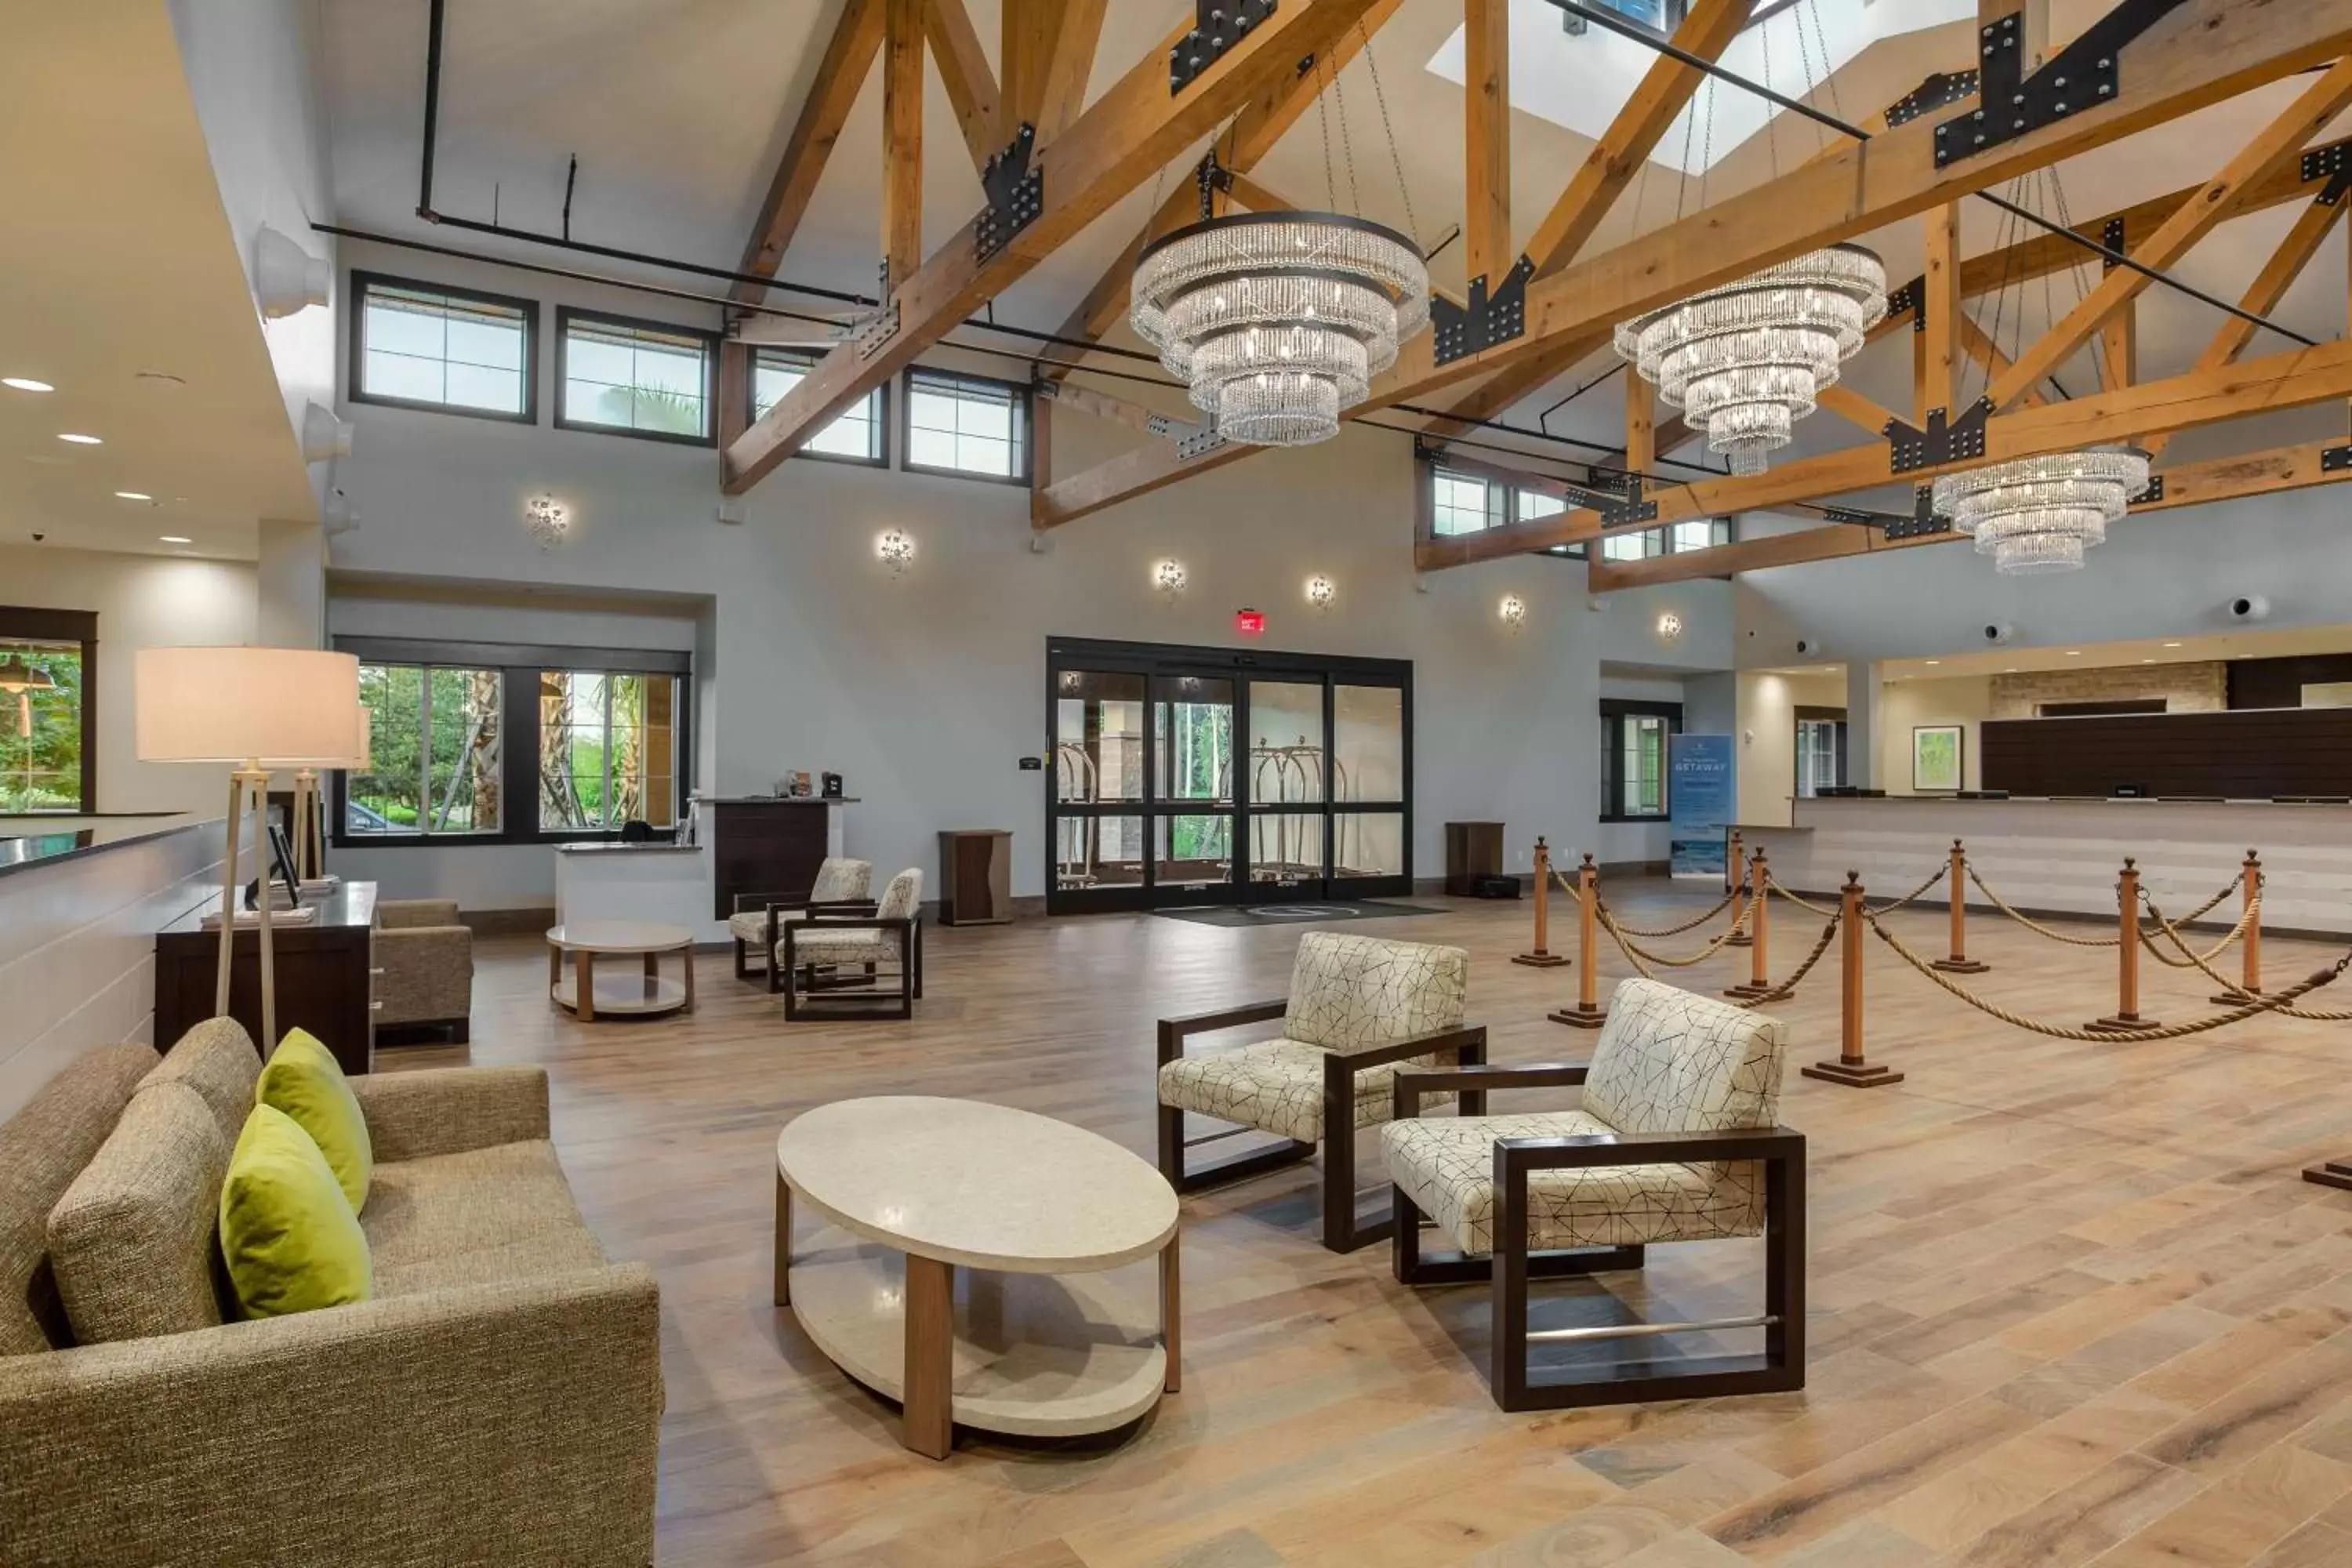 Lobby or reception in Hilton Vacation Club Mystic Dunes Orlando